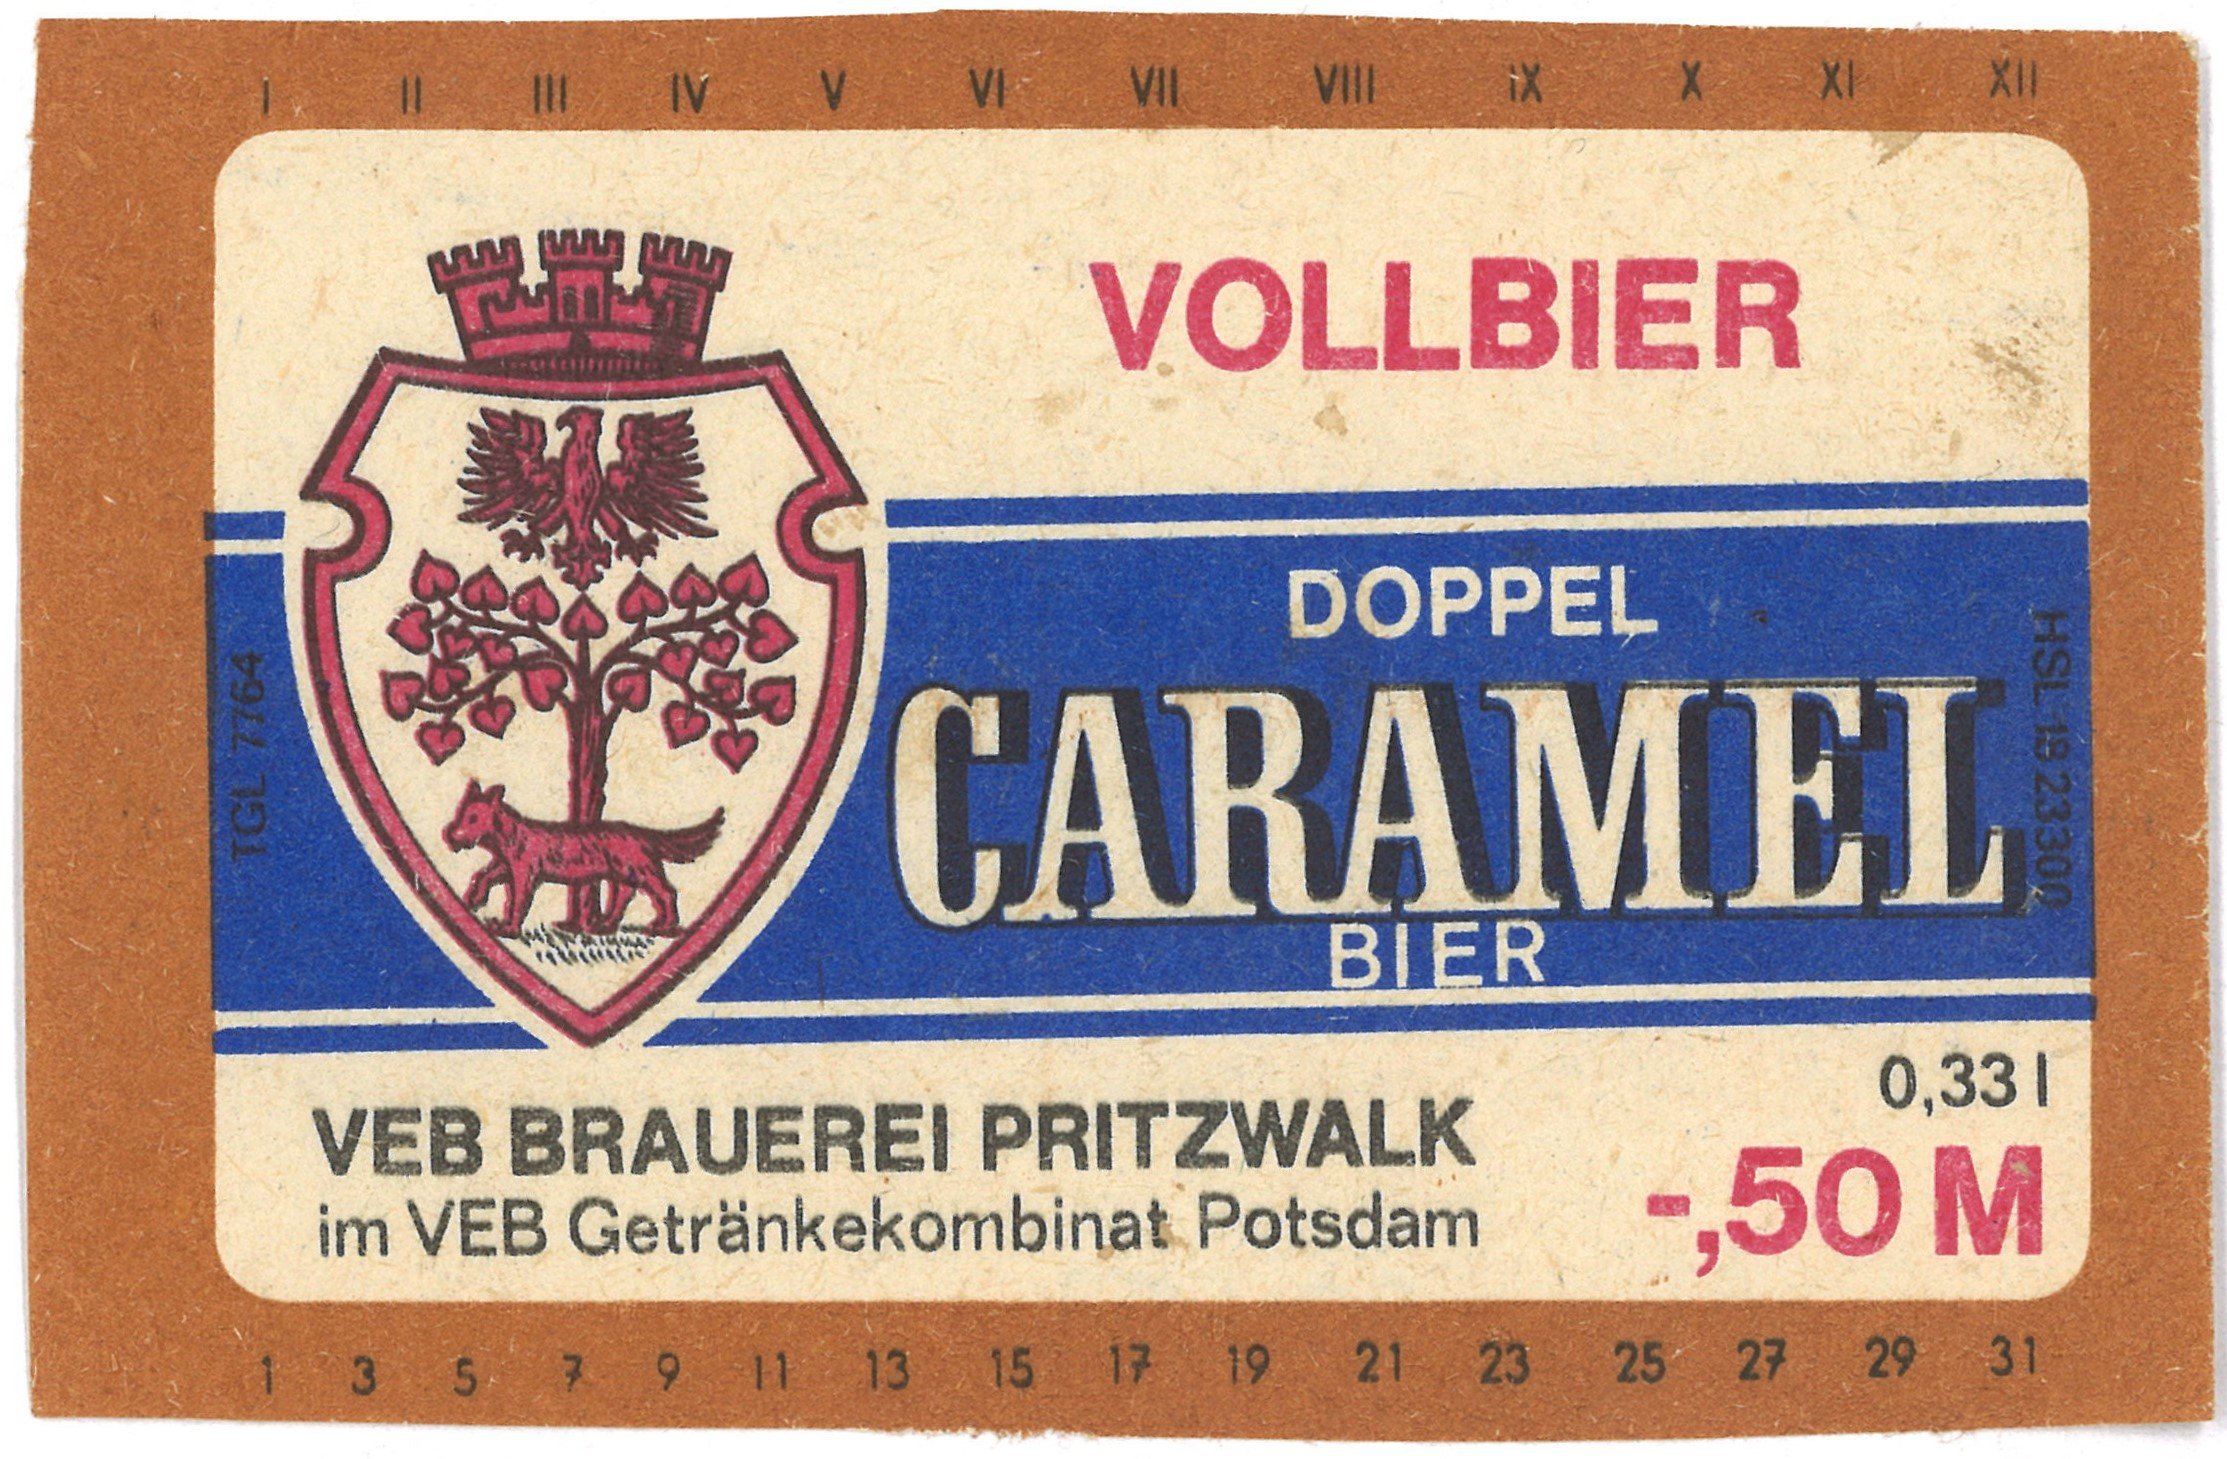 Pritzwalk, VEB Brauerei Pritzwalk: Doppel-Caramel-Bier (Landesgeschichtliche Vereinigung für die Mark Brandenburg e.V., Archiv CC BY)